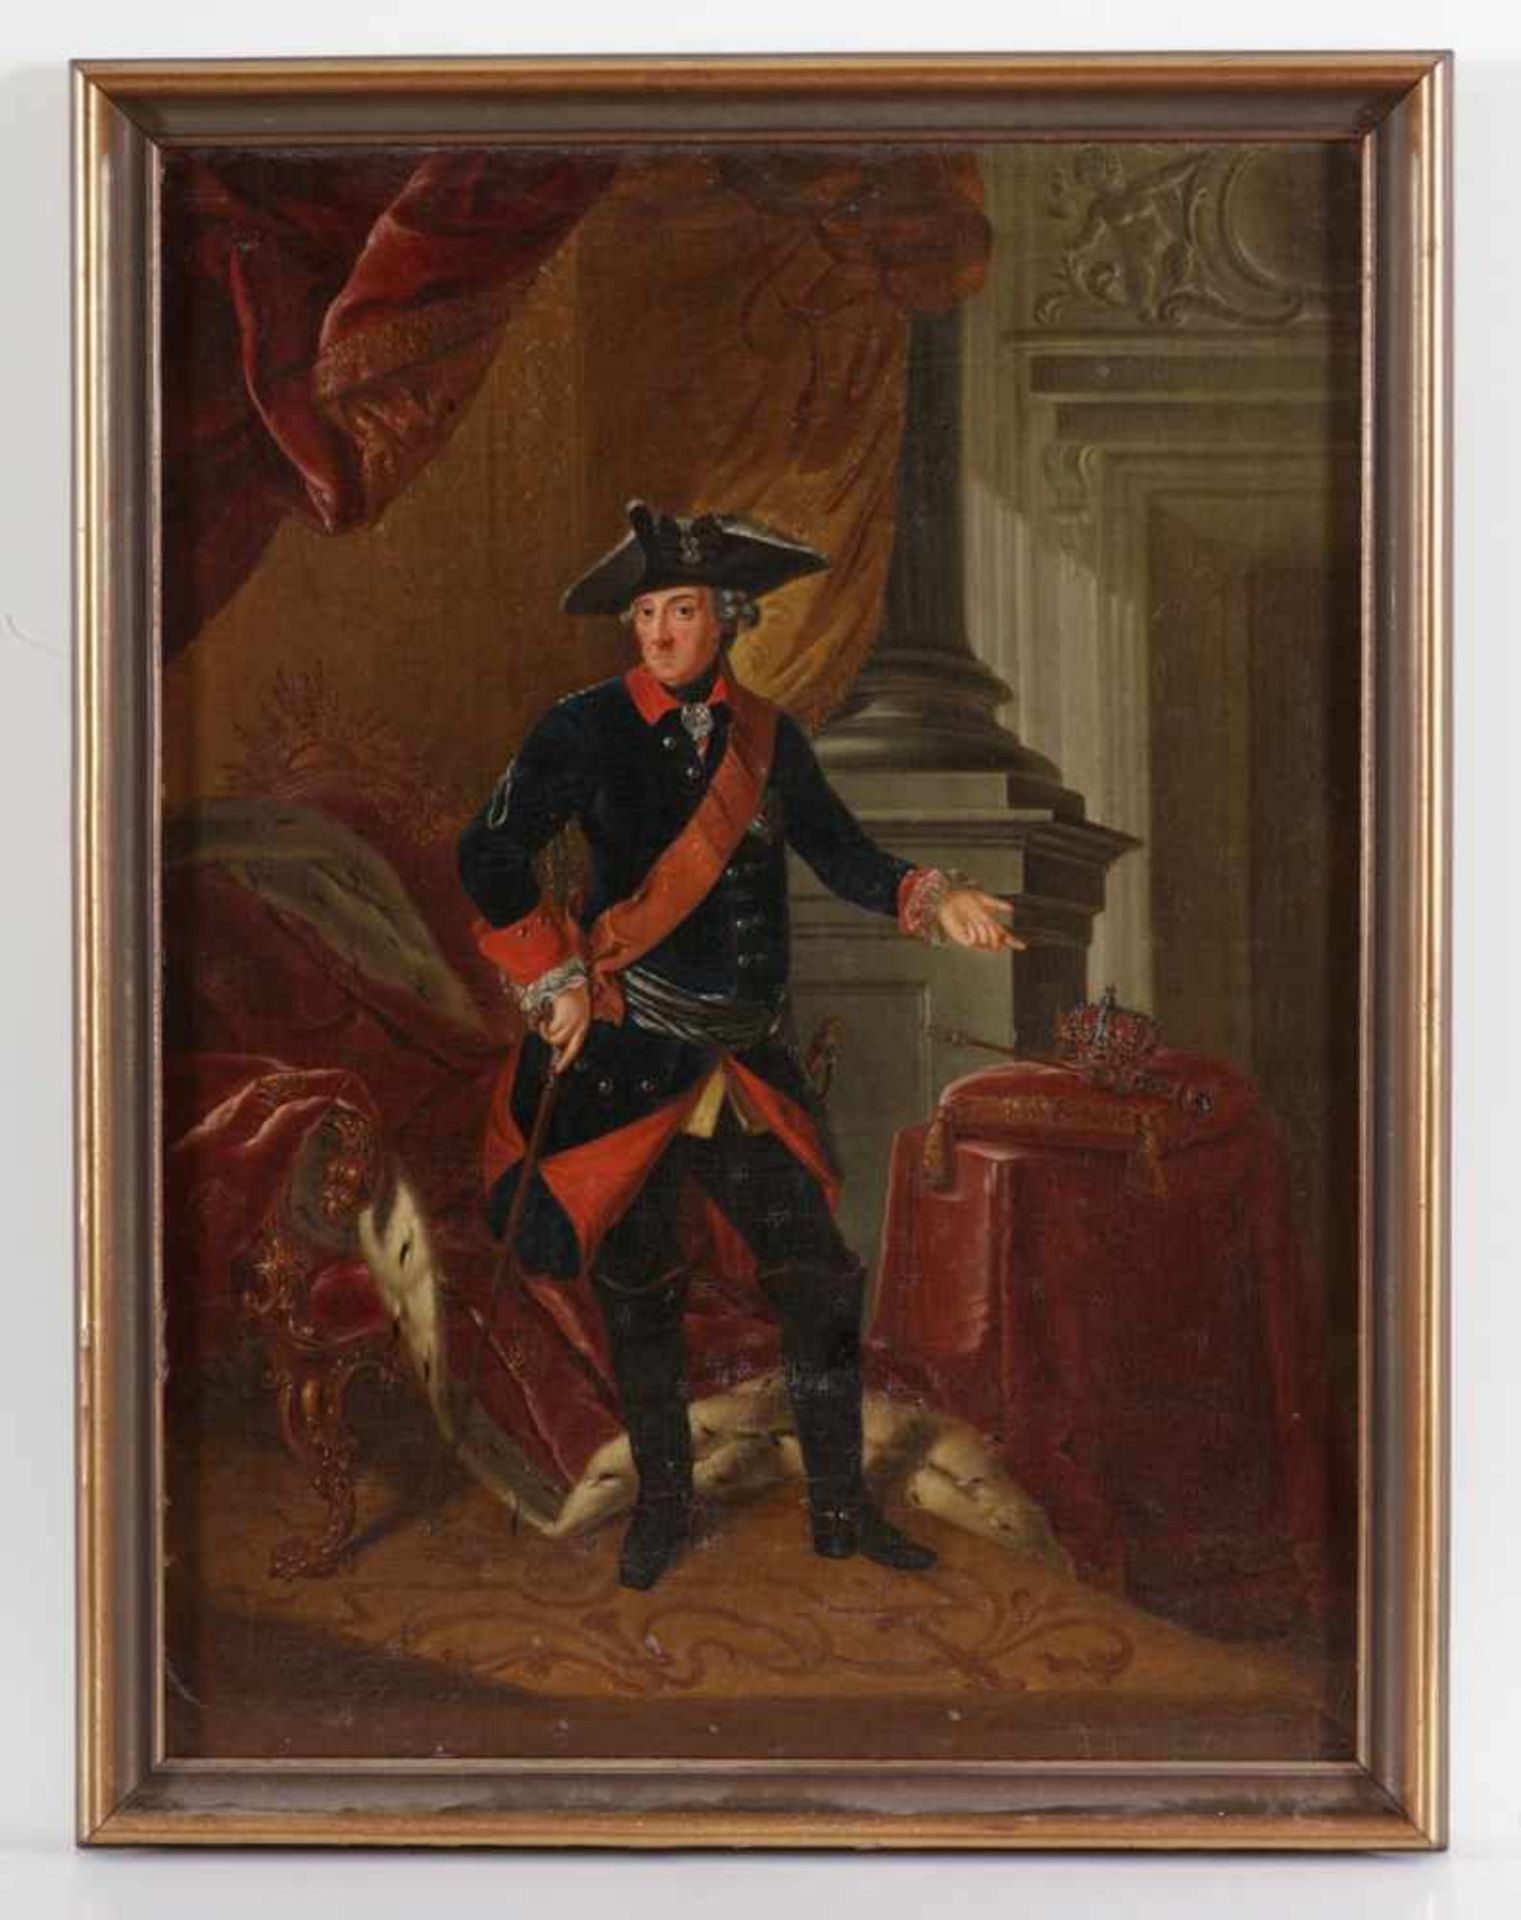 Künstler des 19. Jahrhunderts - Standesporträt von Friedrich II. - Öl/Lwd. Doubliert. 69 x 51 cm. - Image 2 of 2